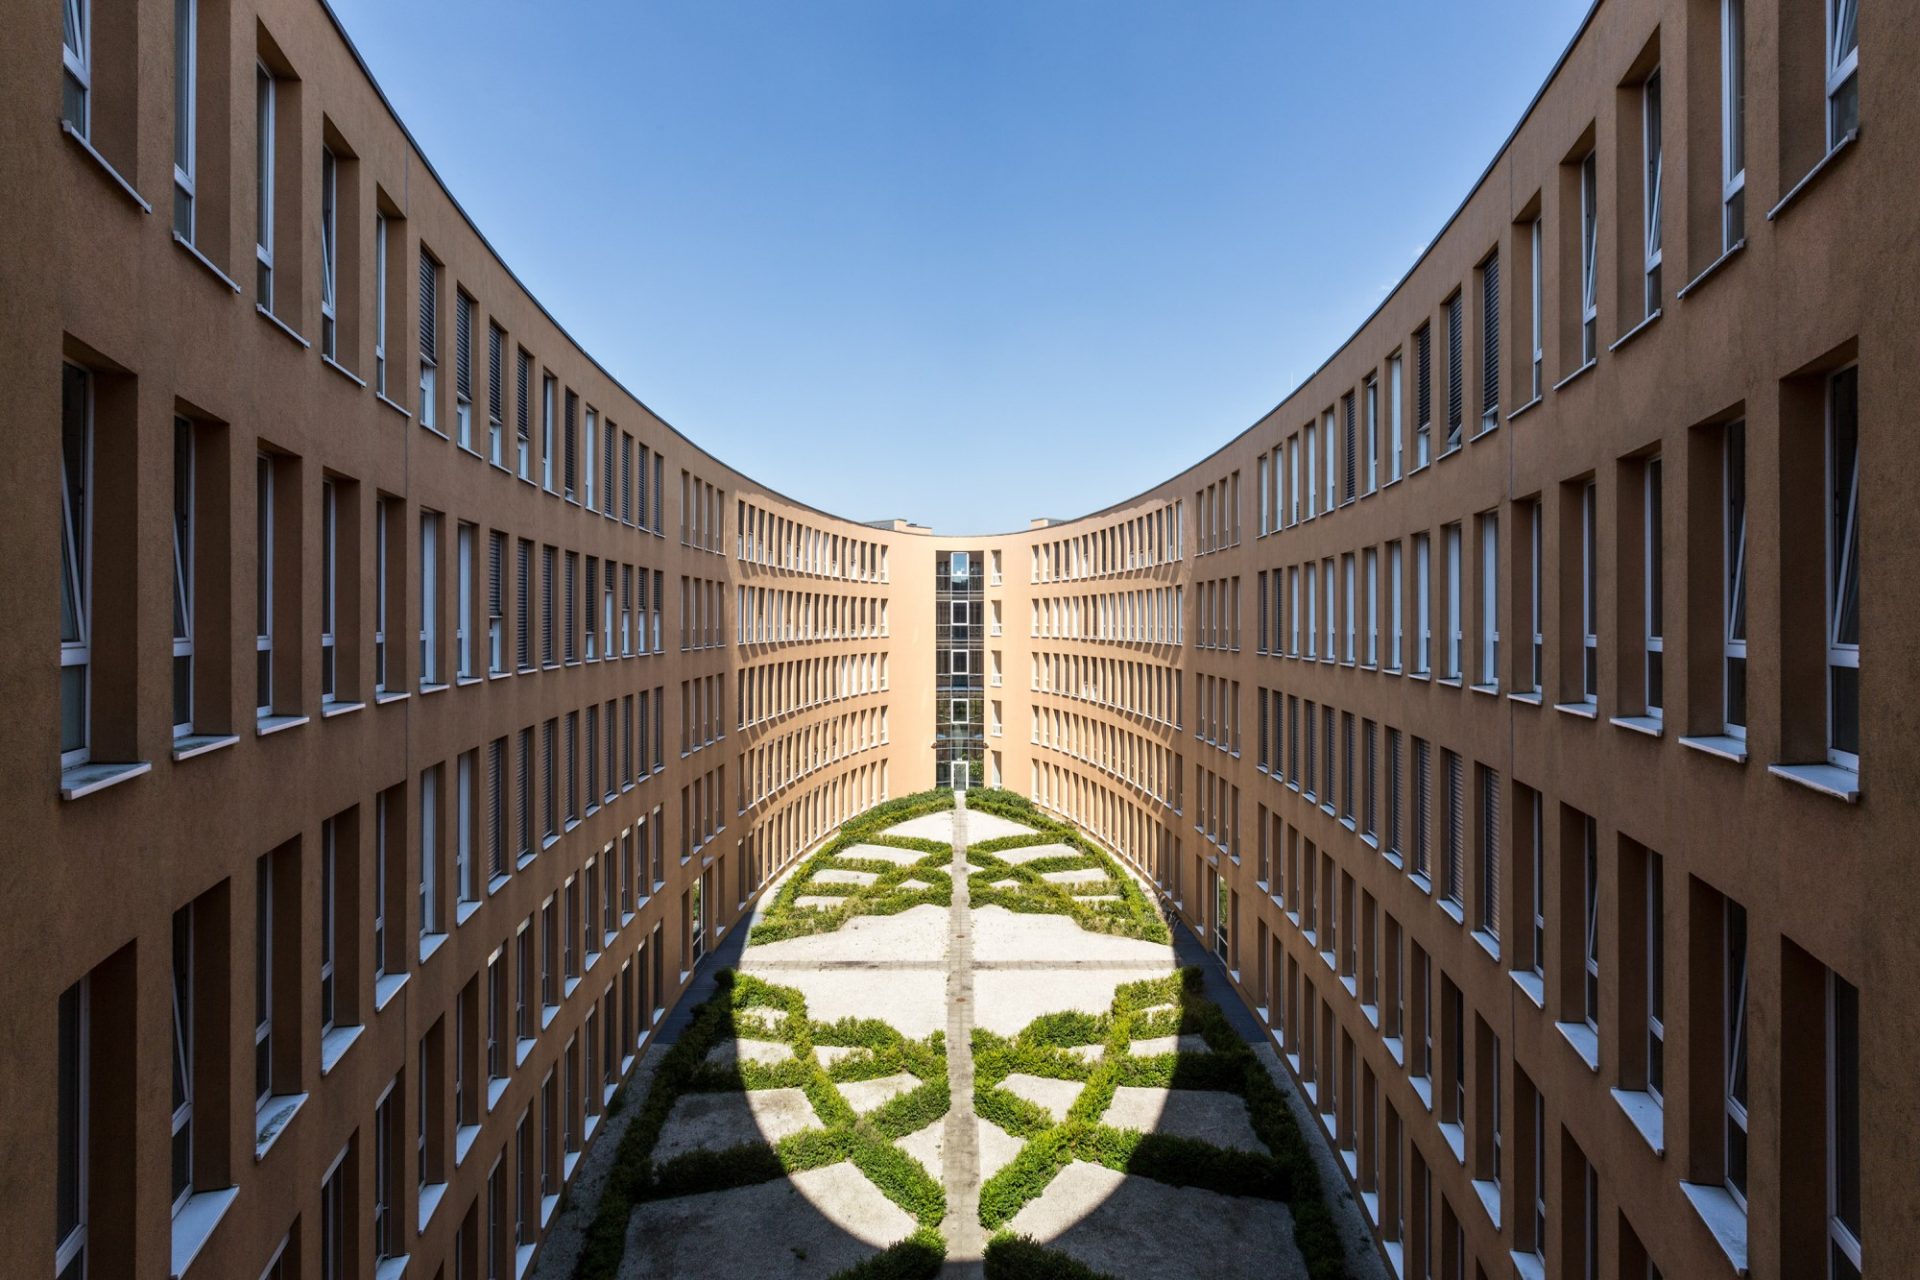 Fotograf für Architektur | Berlin | Offenblende | Ingo